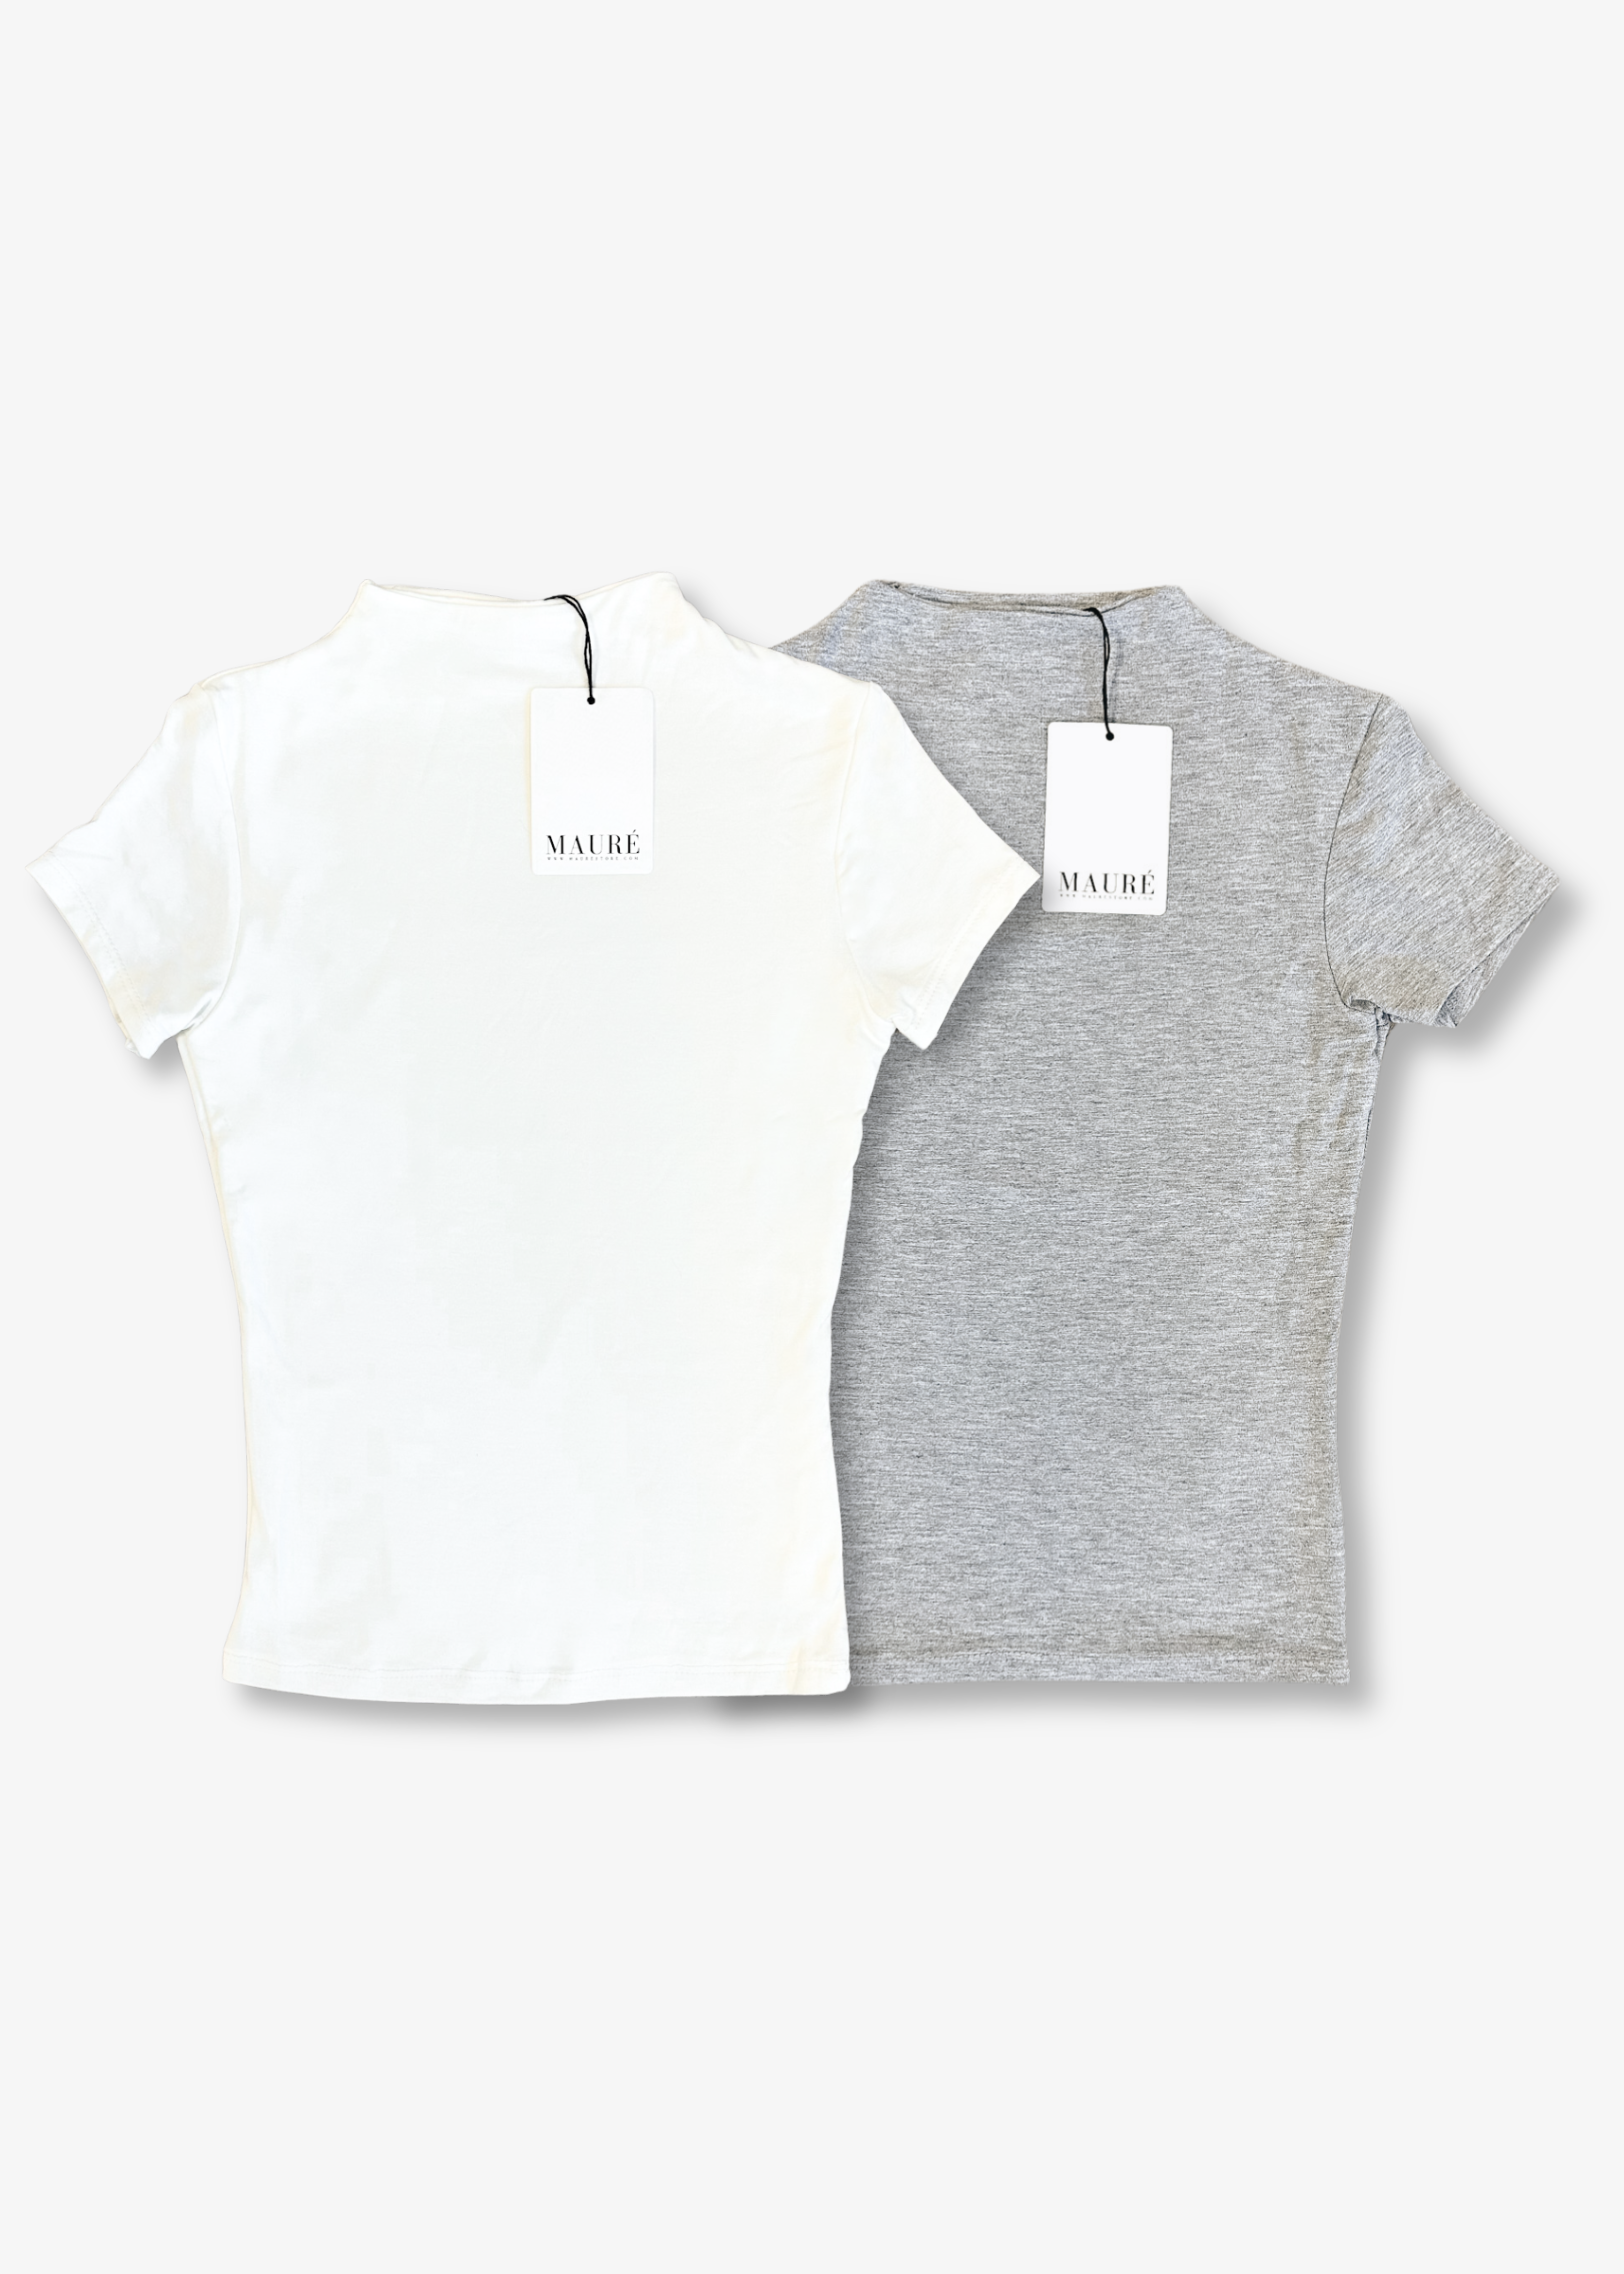 2-pack short sleeve tops long (classy) & off-white & Light grey melange